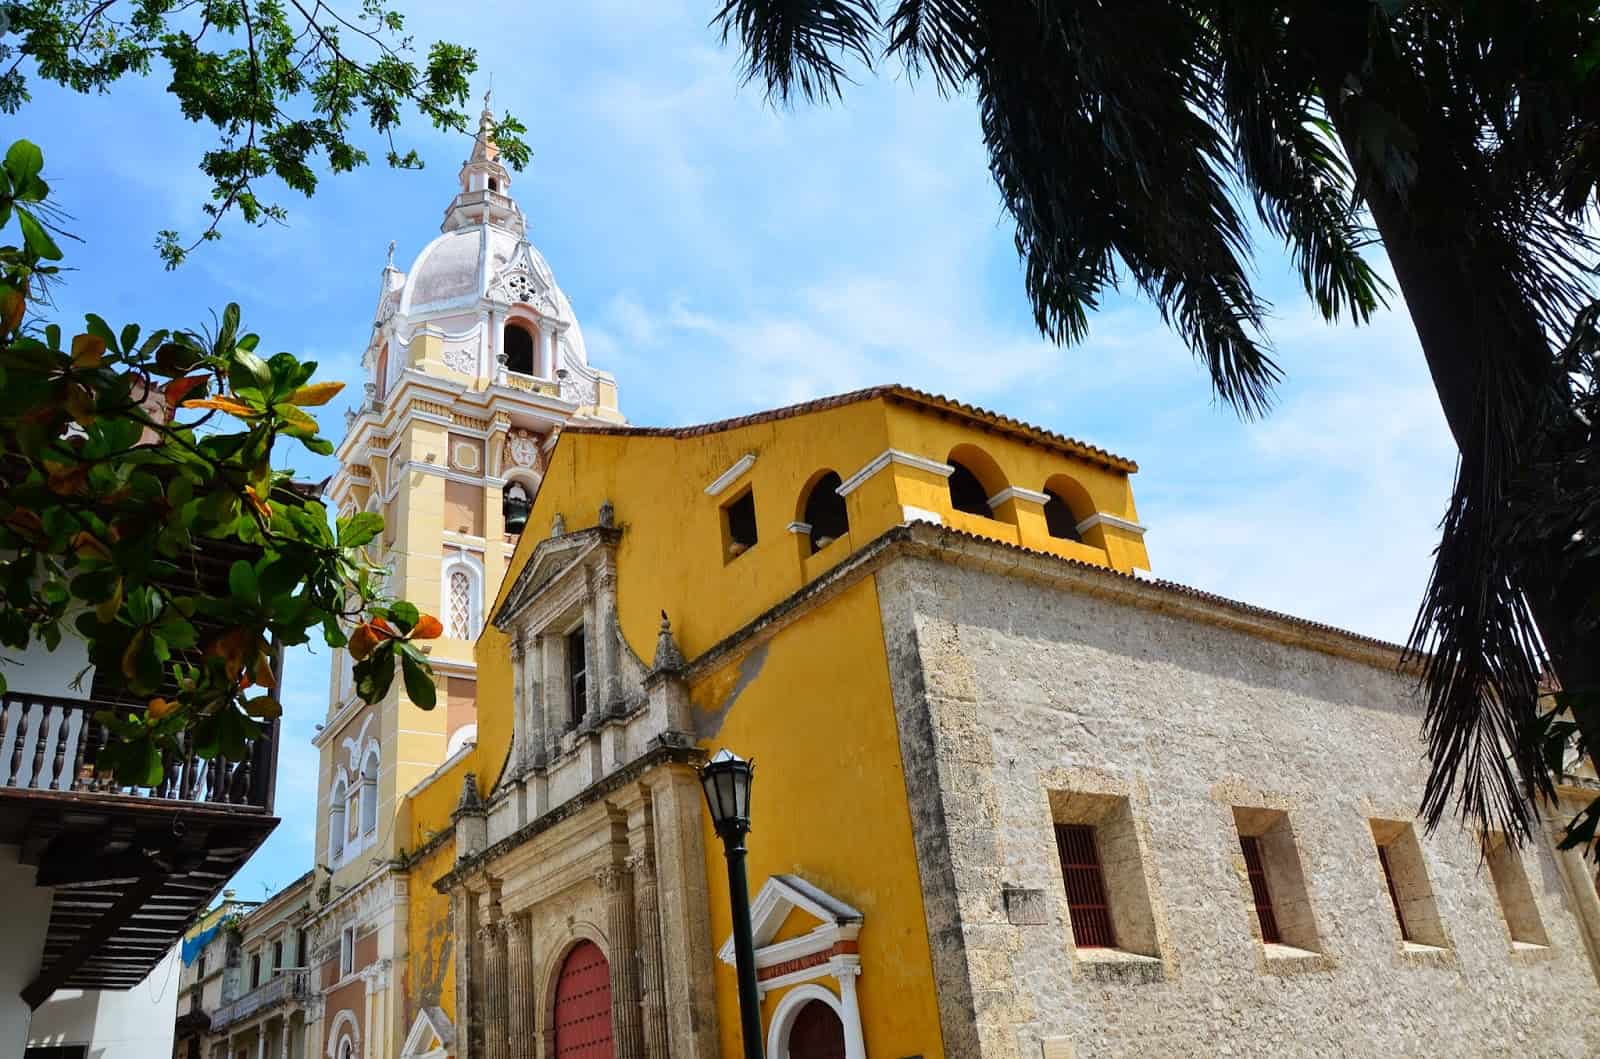 Cathedral of Cartagena in El Centro, Cartagena, Bolívar, Colombia